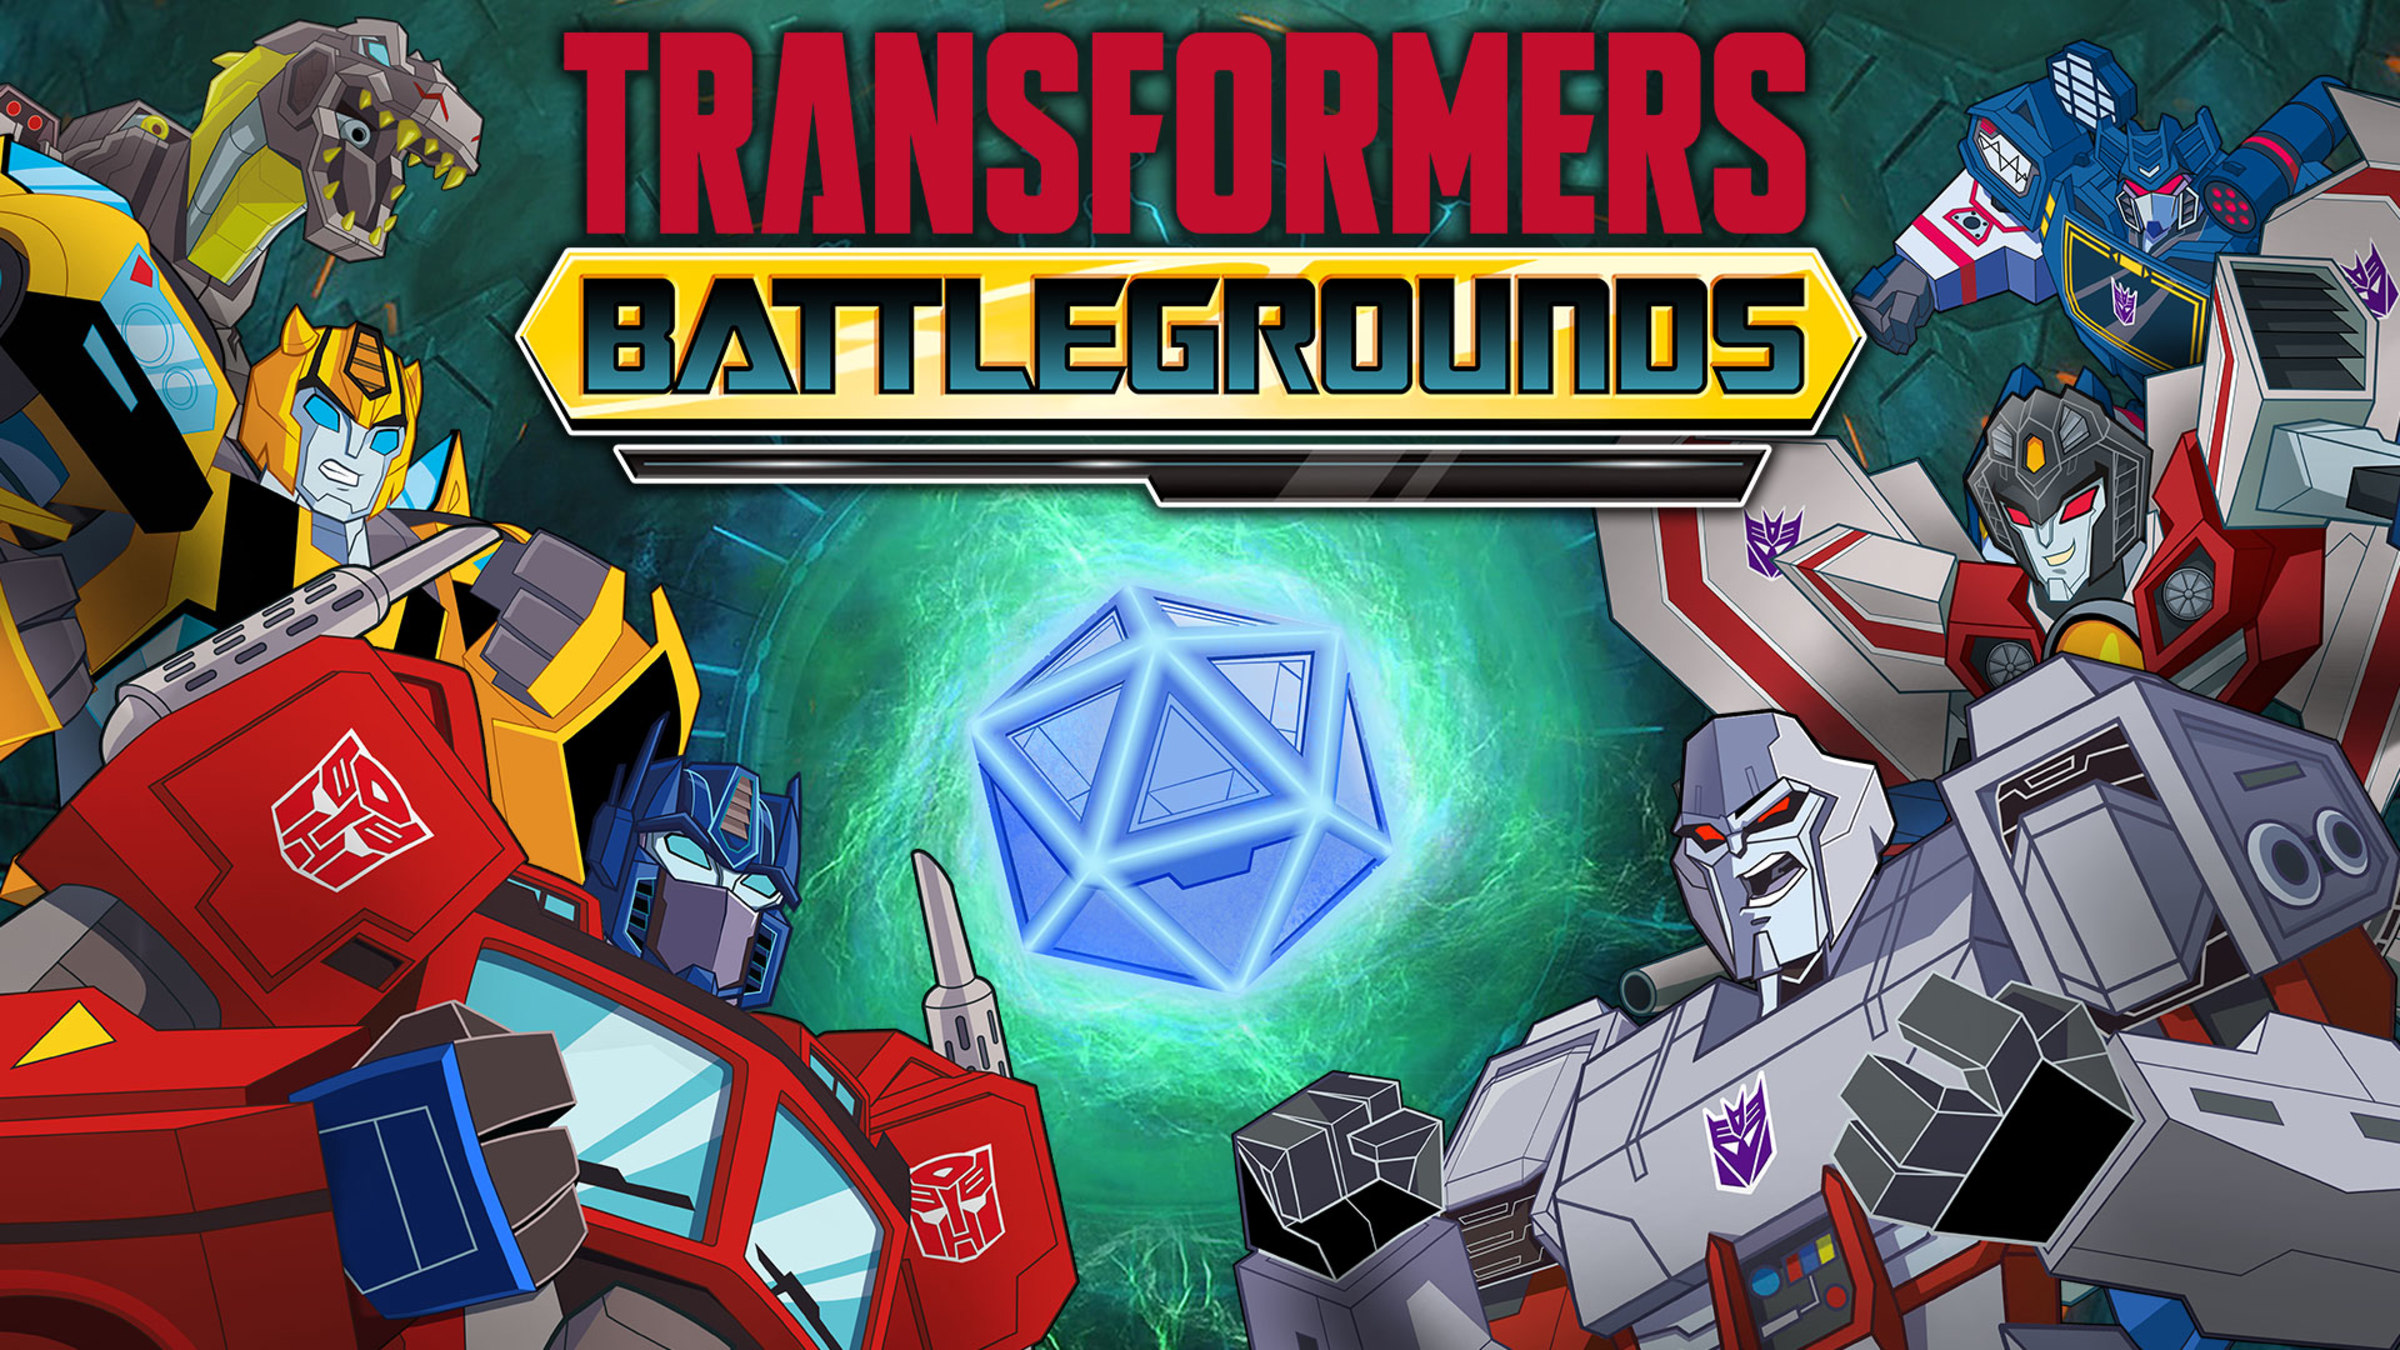 Đã đến lúc hóa thân thành Optimus Prime và chiến đấu với kẻ thù trên Nintendo Switch cùng TRANSFORMERS: BATTLEGROUNDS - một trò chơi đáng chơi dành cho những fan hâm mộ series phim robot Transformers đình đám.